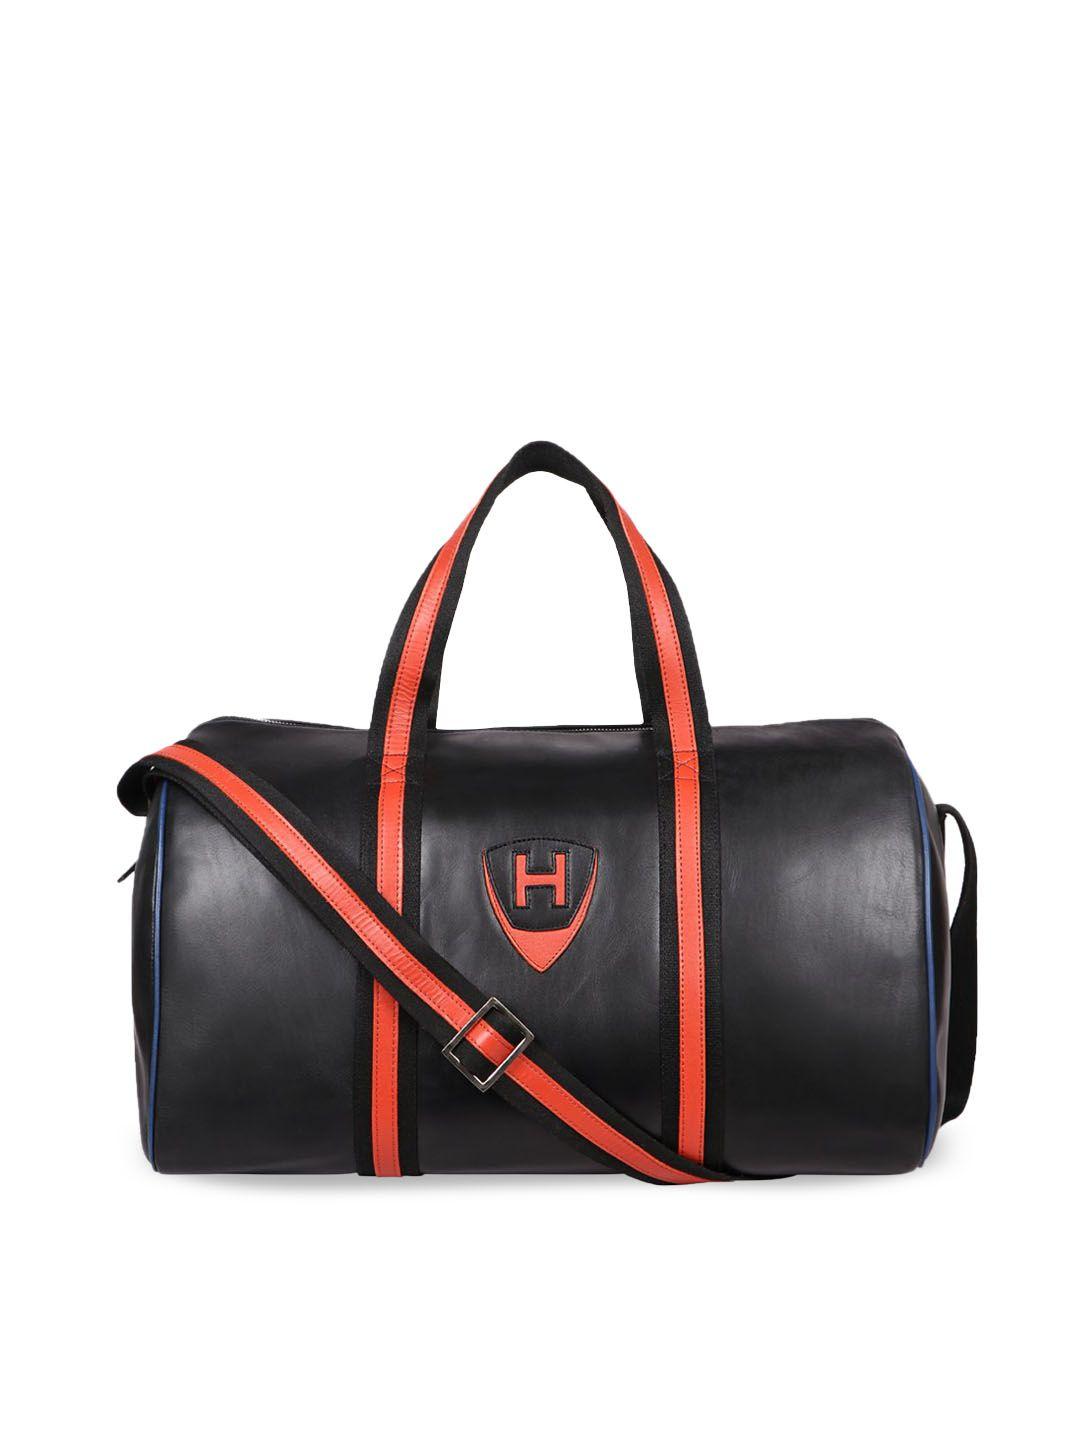 hidesign-leather-black-duffel-bag